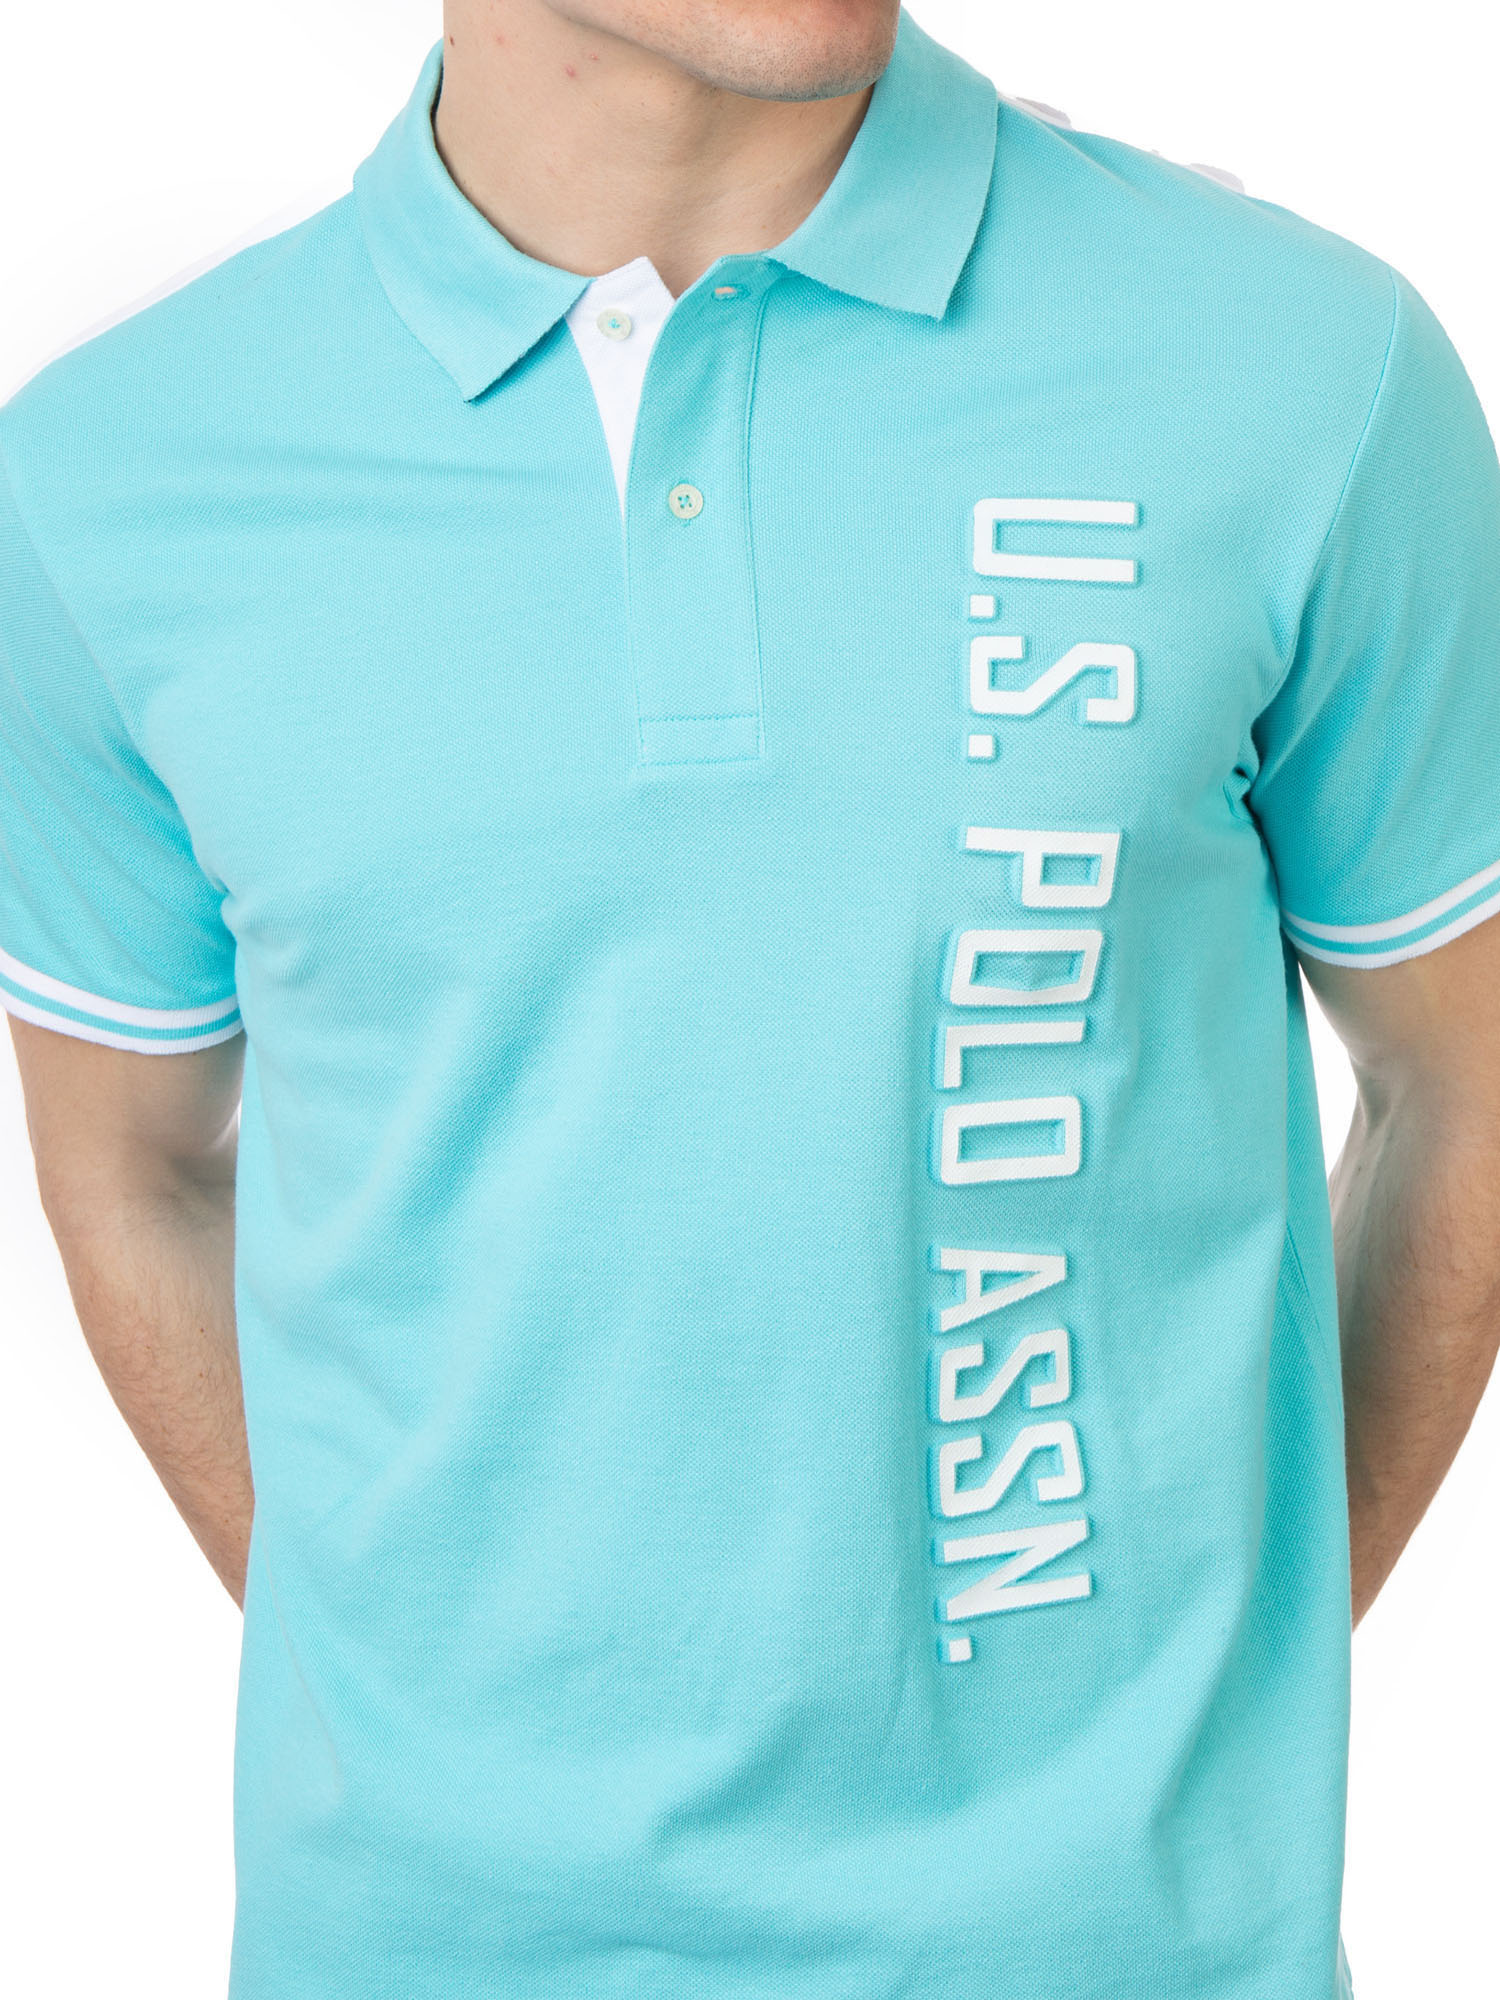 U.S. Polo Assn. Men's Embossed Logo Pique Polo Shirt - image 5 of 6